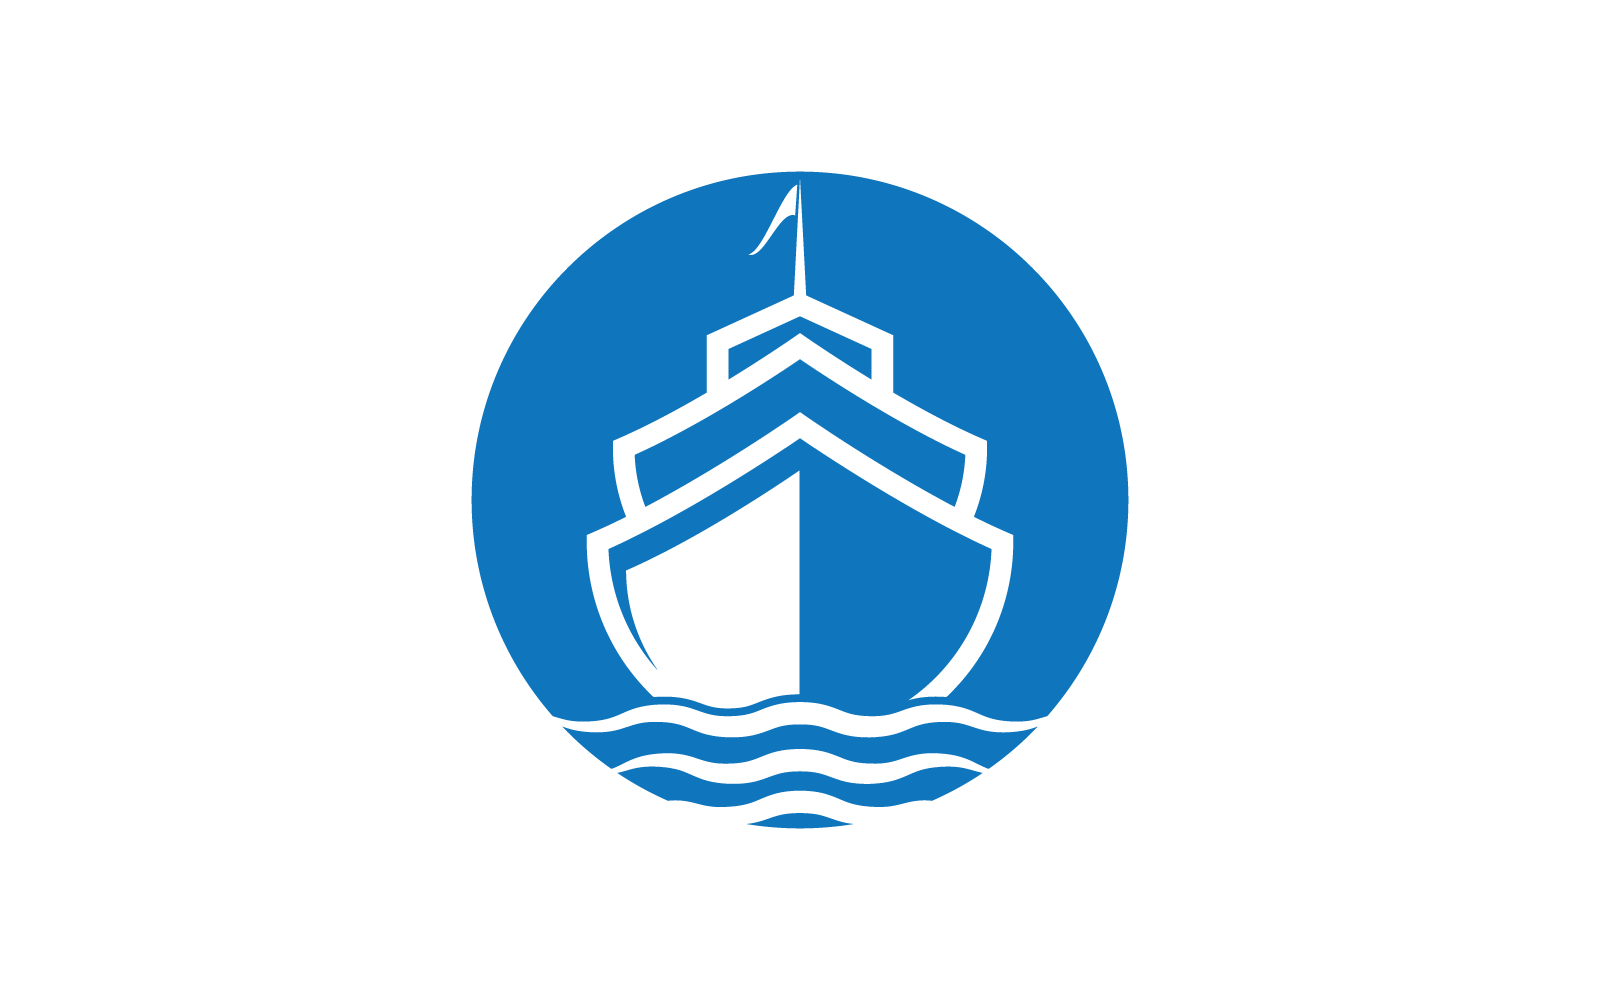 Cruise ship Logo Template vector icon design illustration